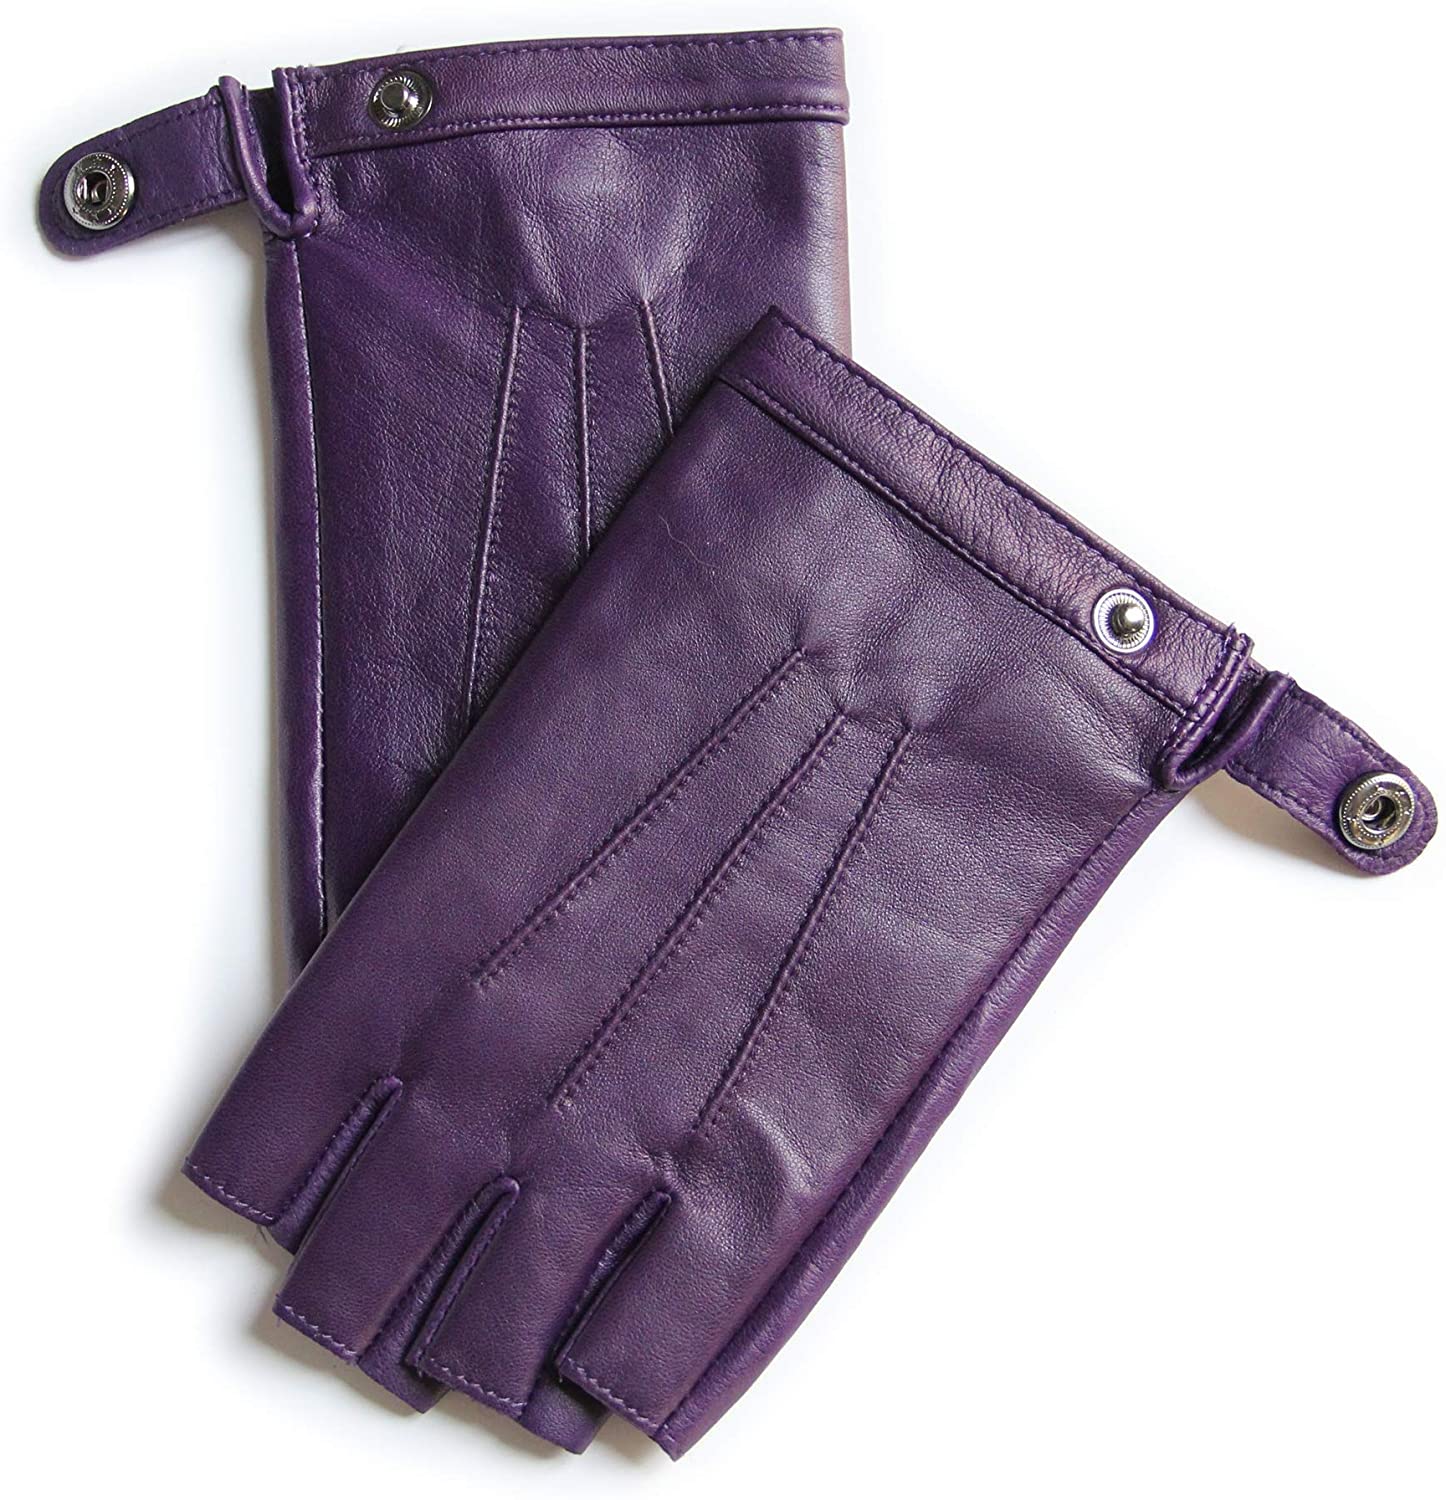 Elysian Fingerless Leather Gloves